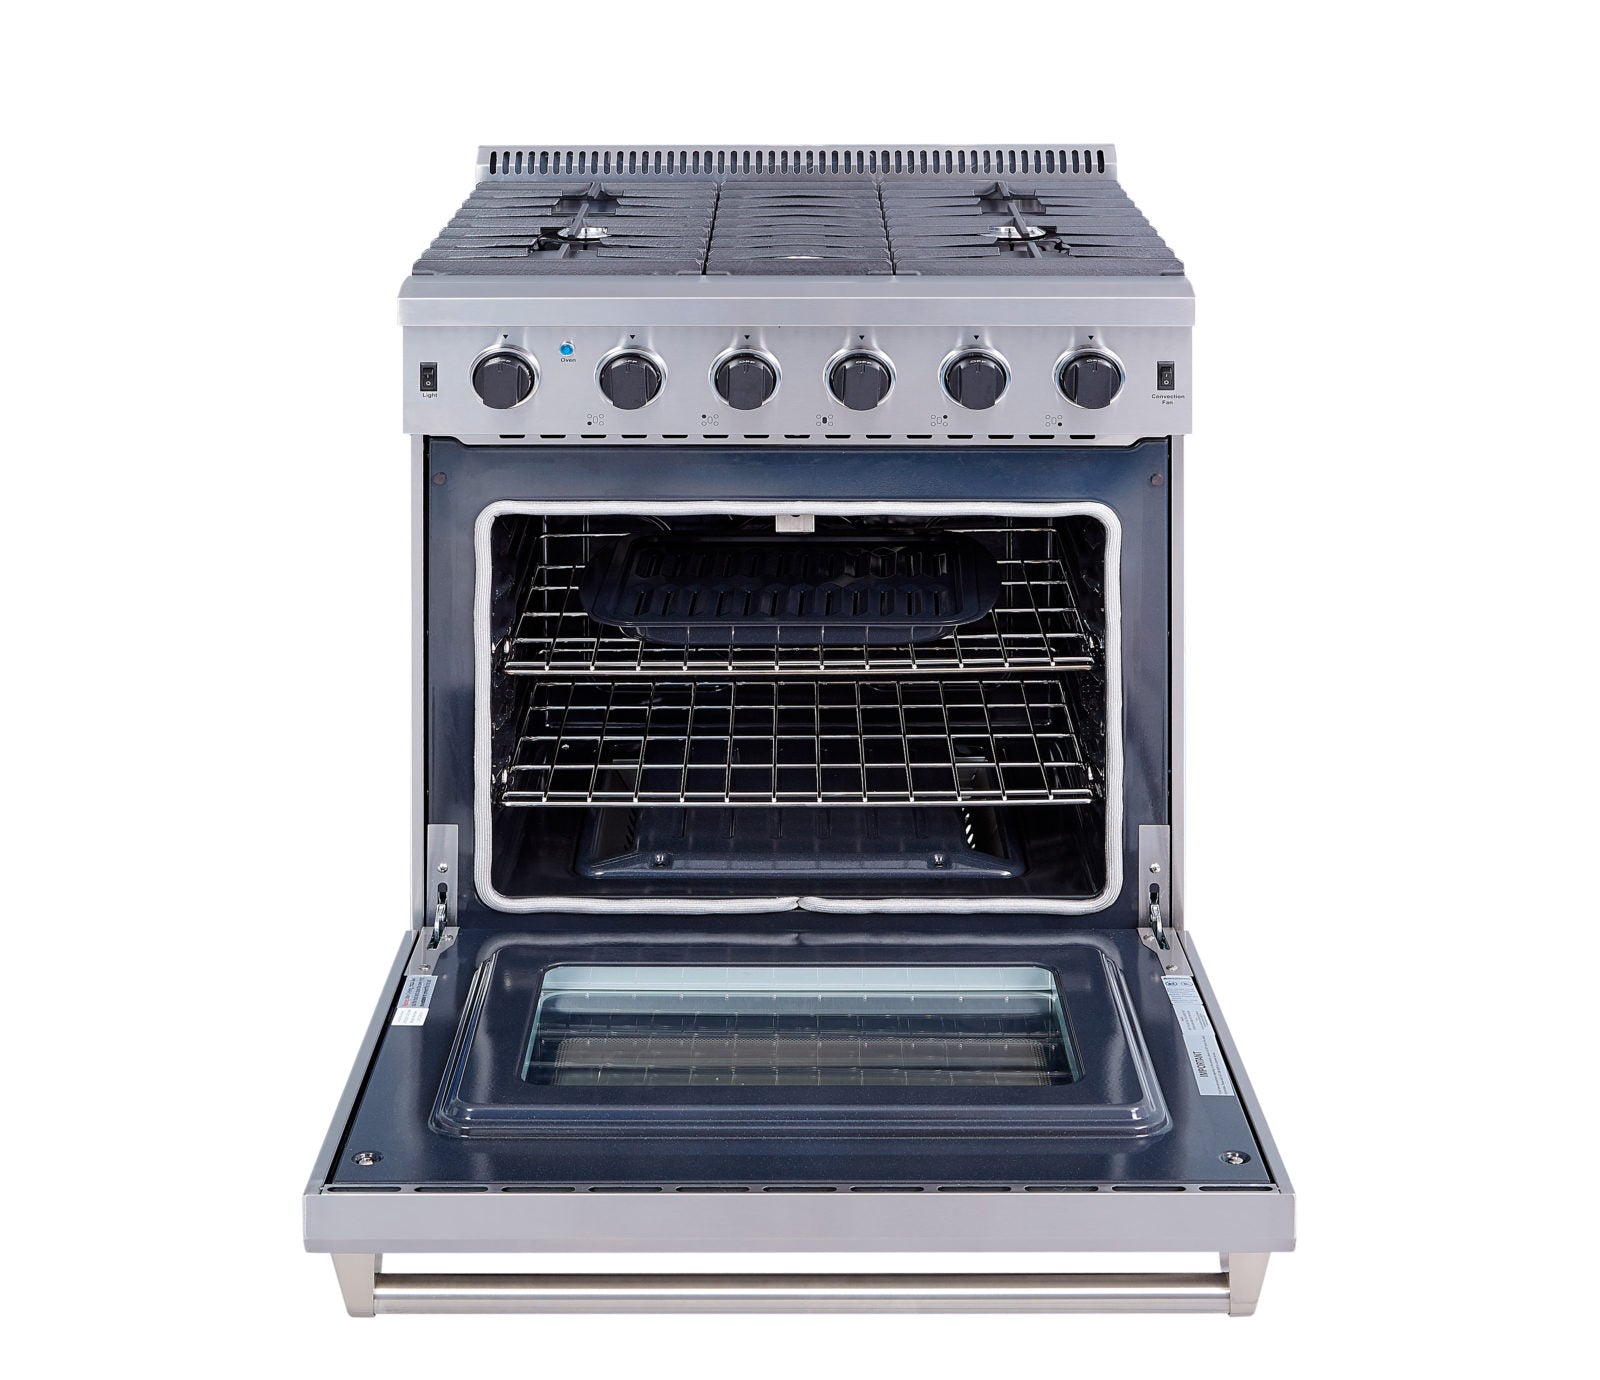 Appliance Package, 4 Piece, 36" Fridge, 30" Gas Range, Range Hood & Dishwasher) Stainless Steel Kitchen Set,  BRTK 30-4 - RenoShop